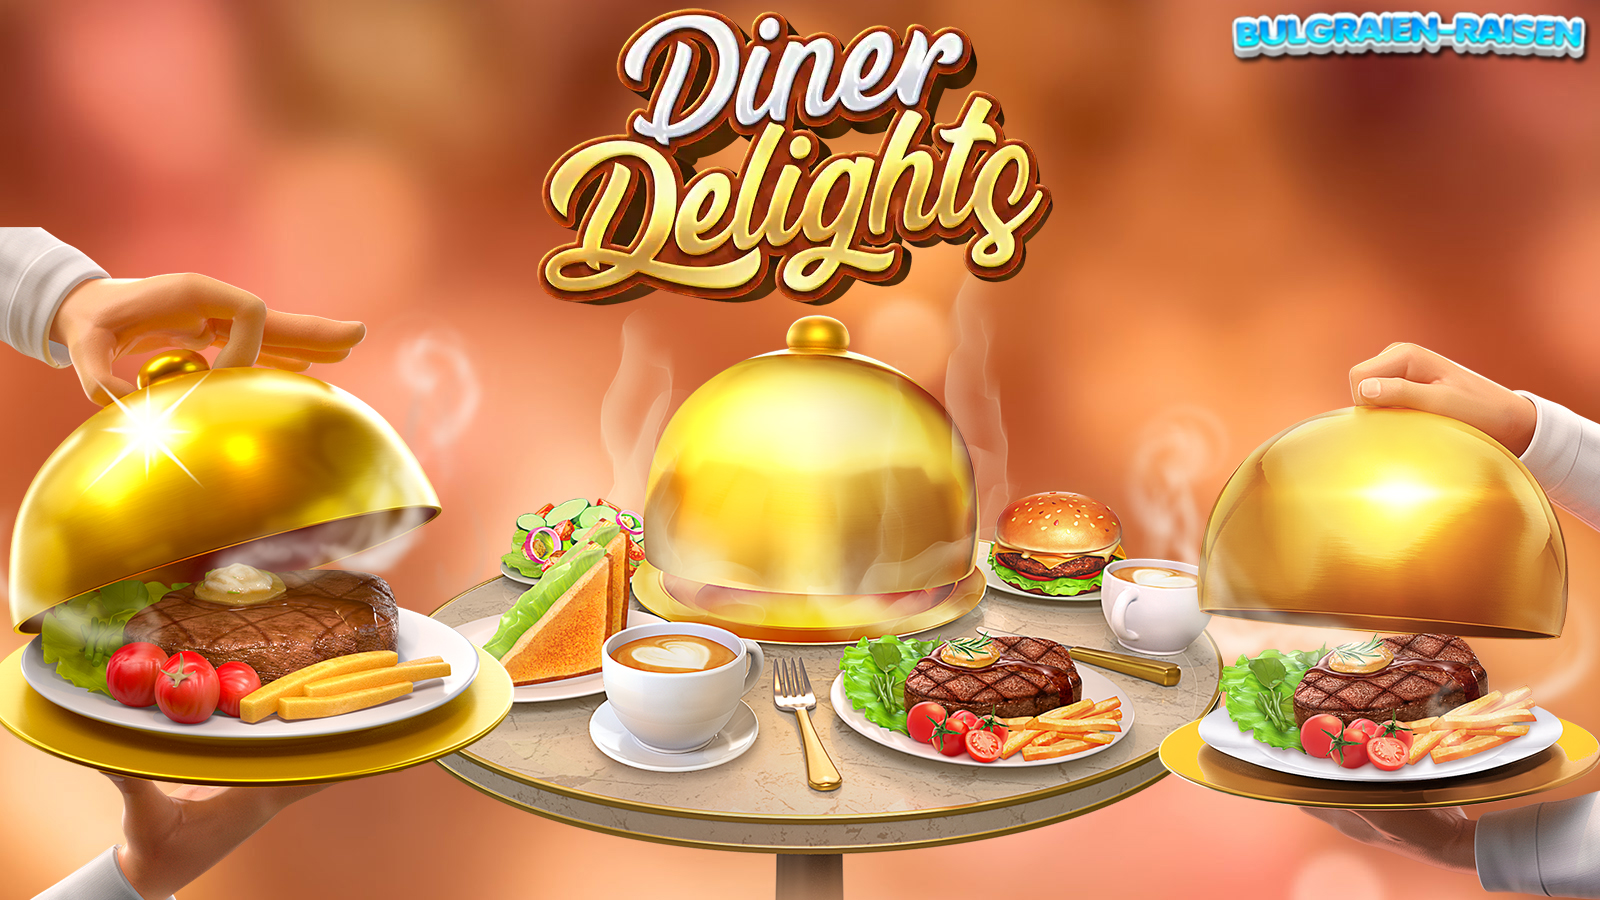 Diner Delights PgSoft